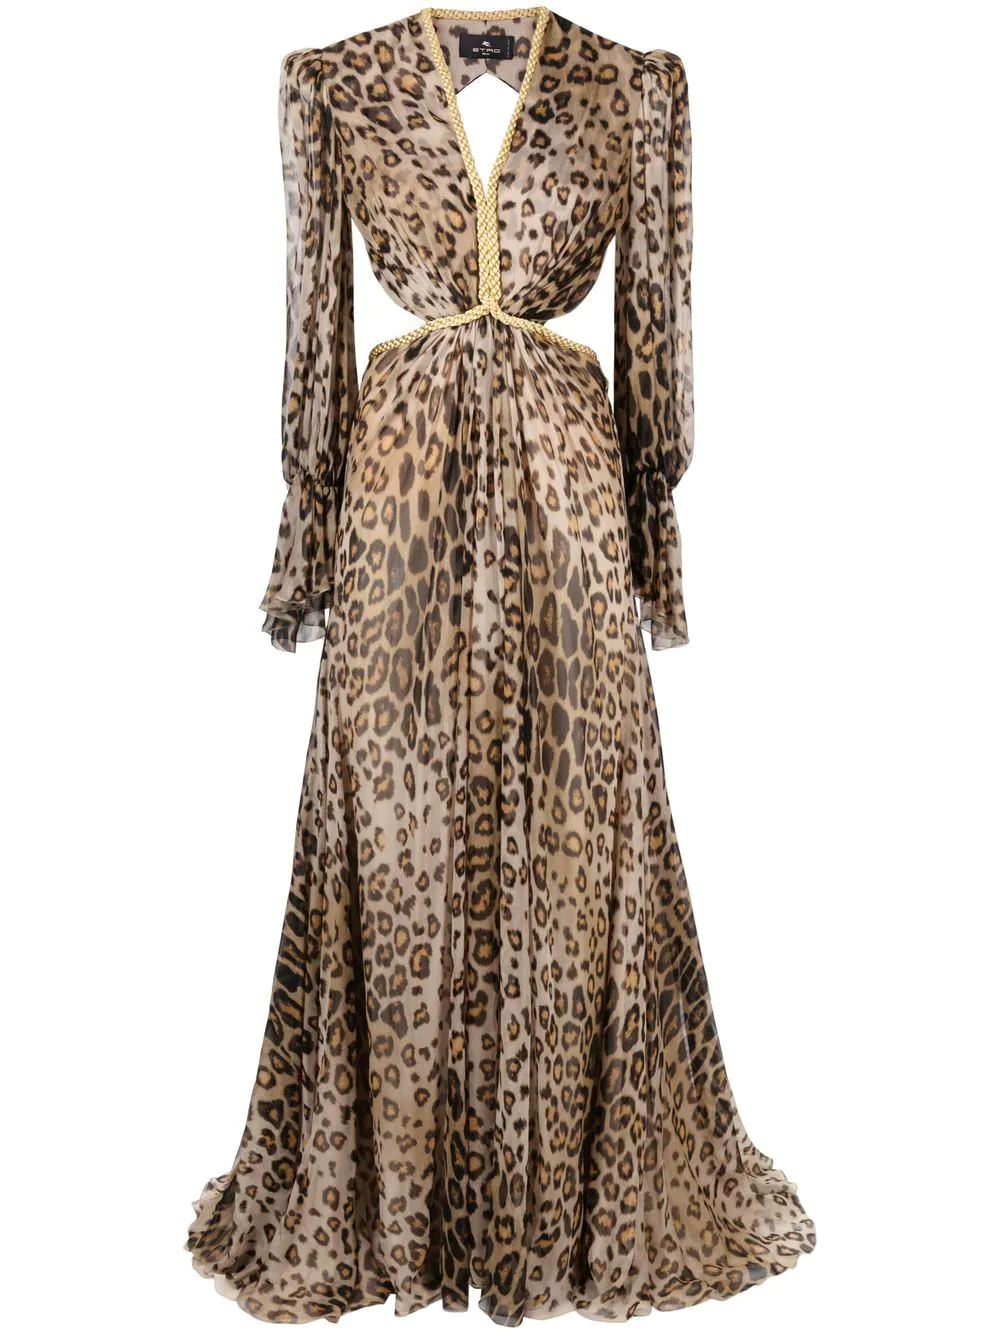 Где купить леопардовое платье, как у Дуа Липы?